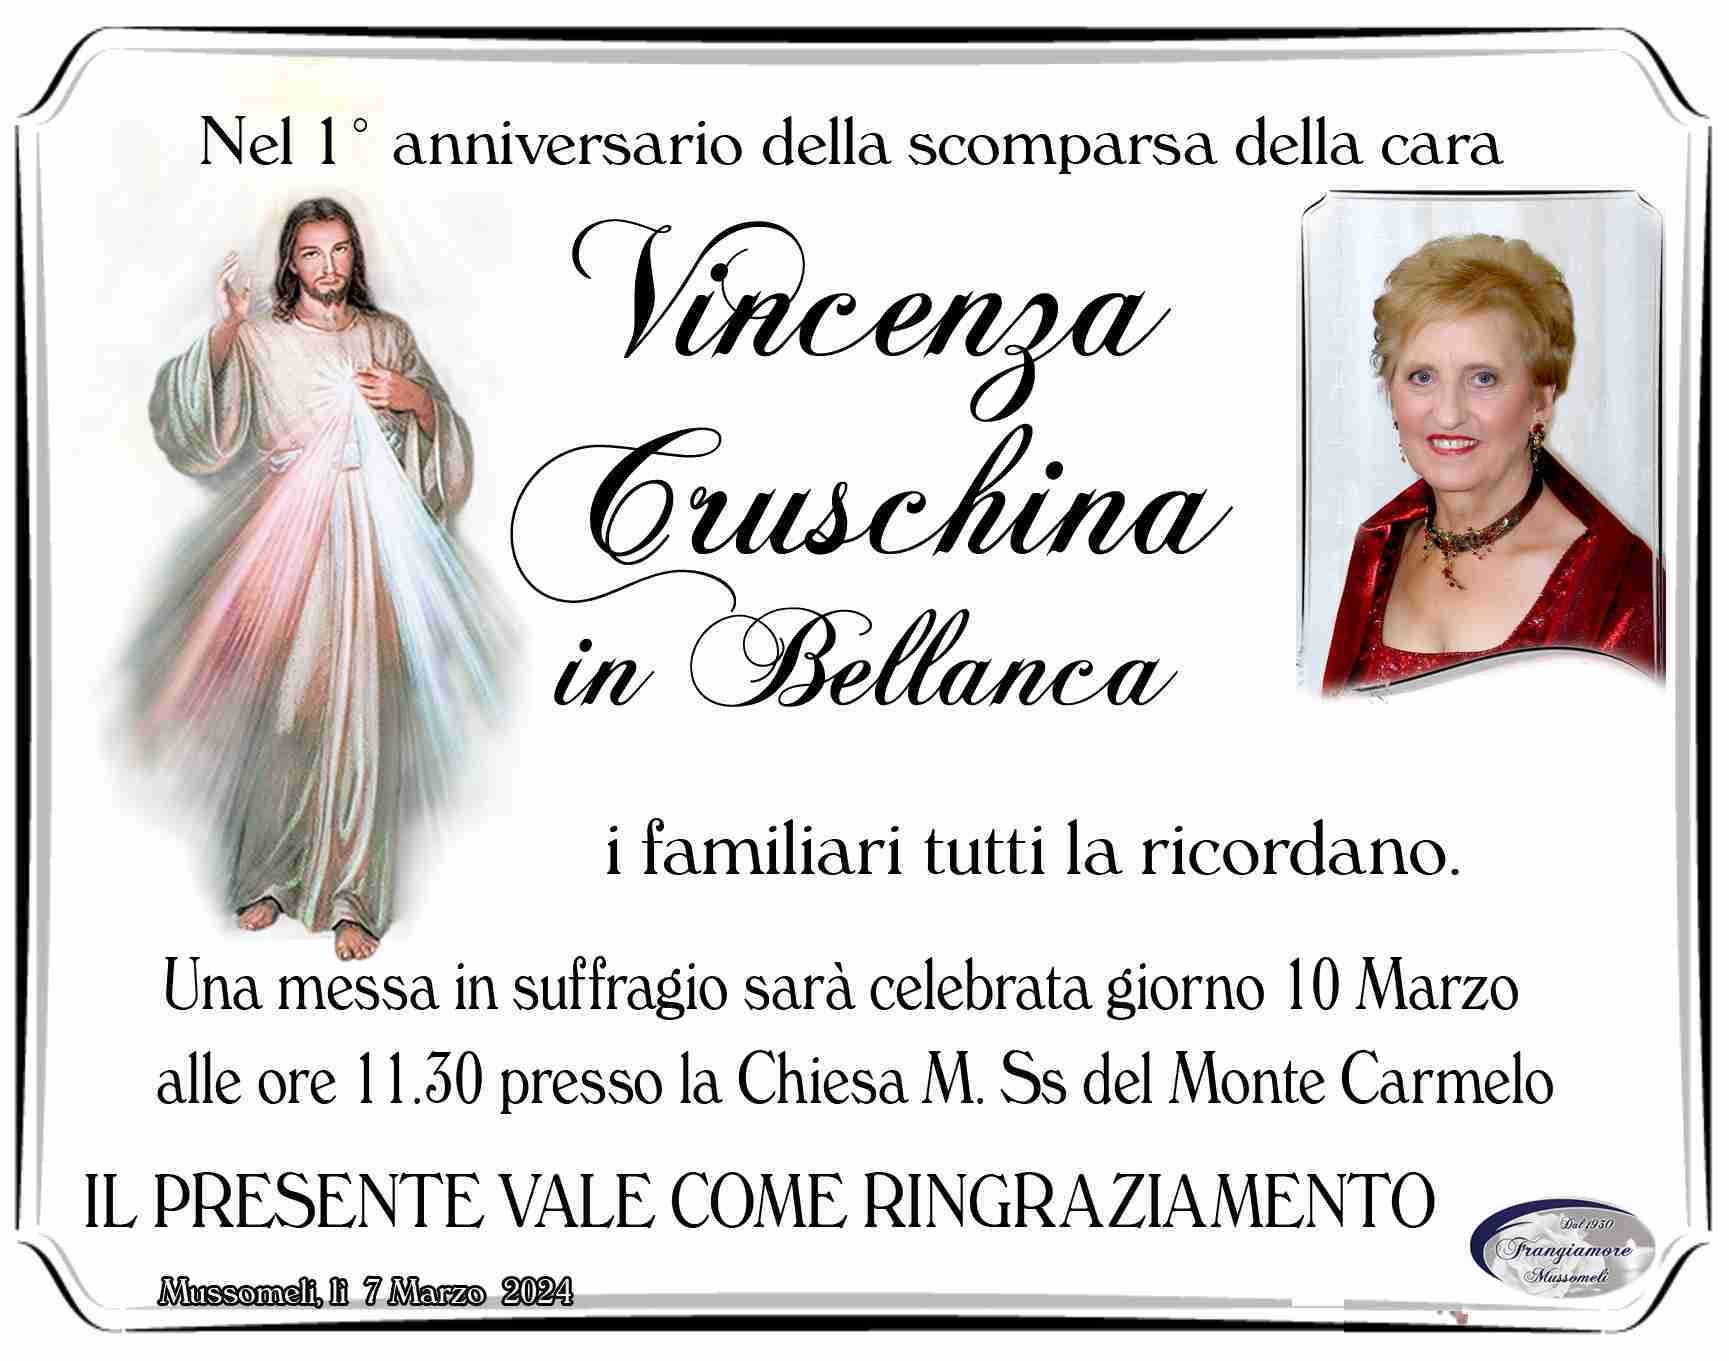 Cruschina Vincenza